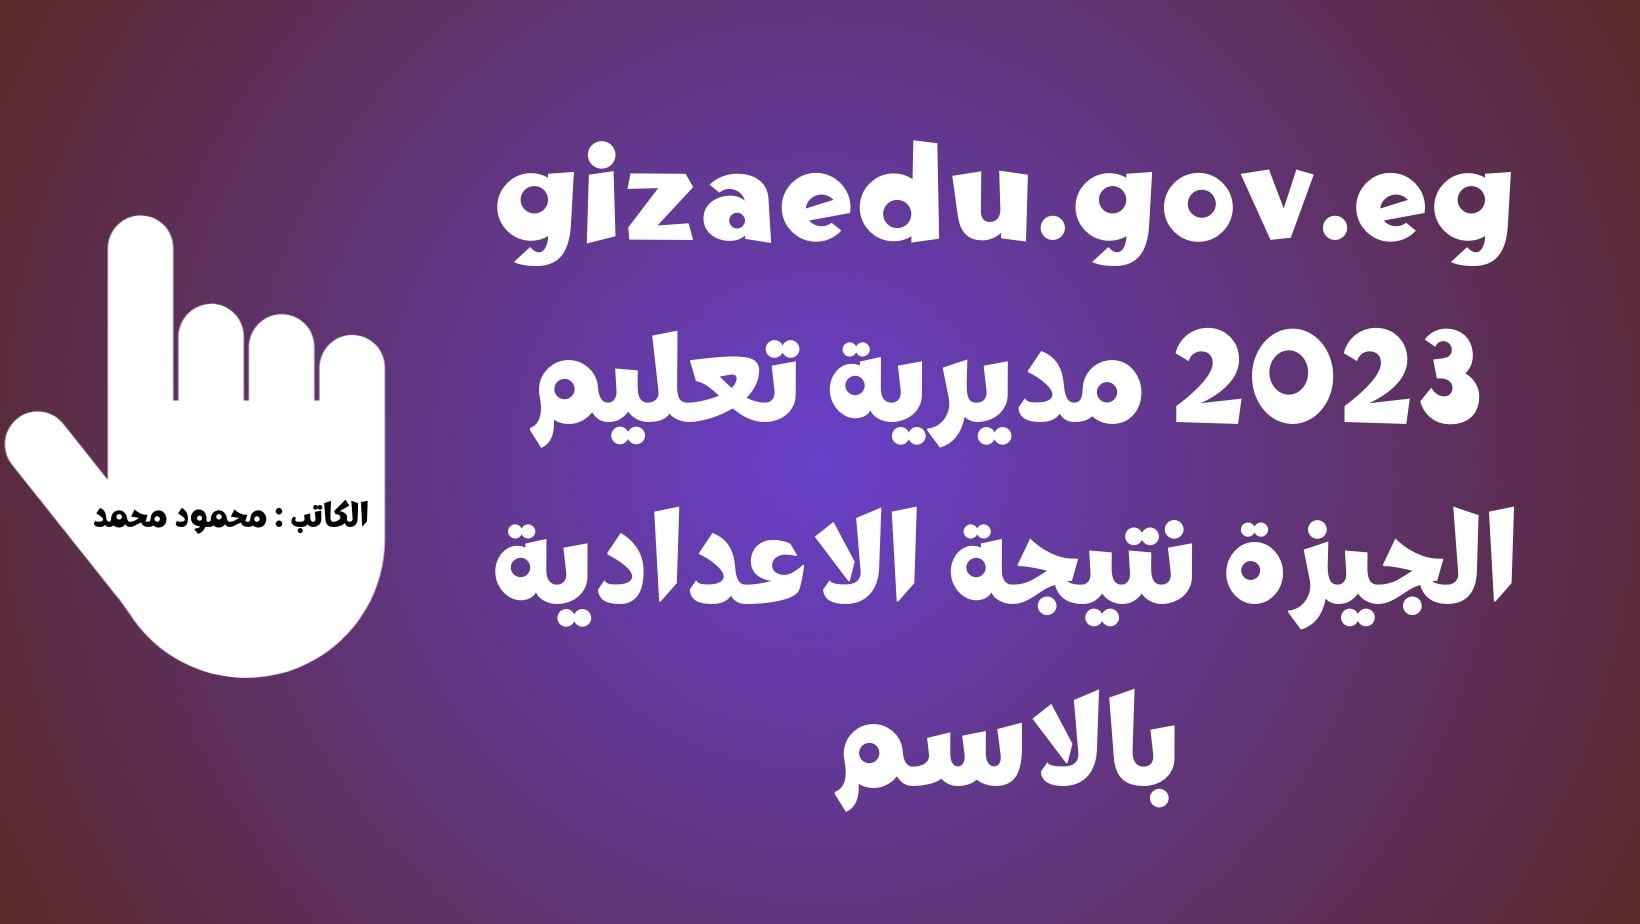 gizaedu.gov.eg 2023